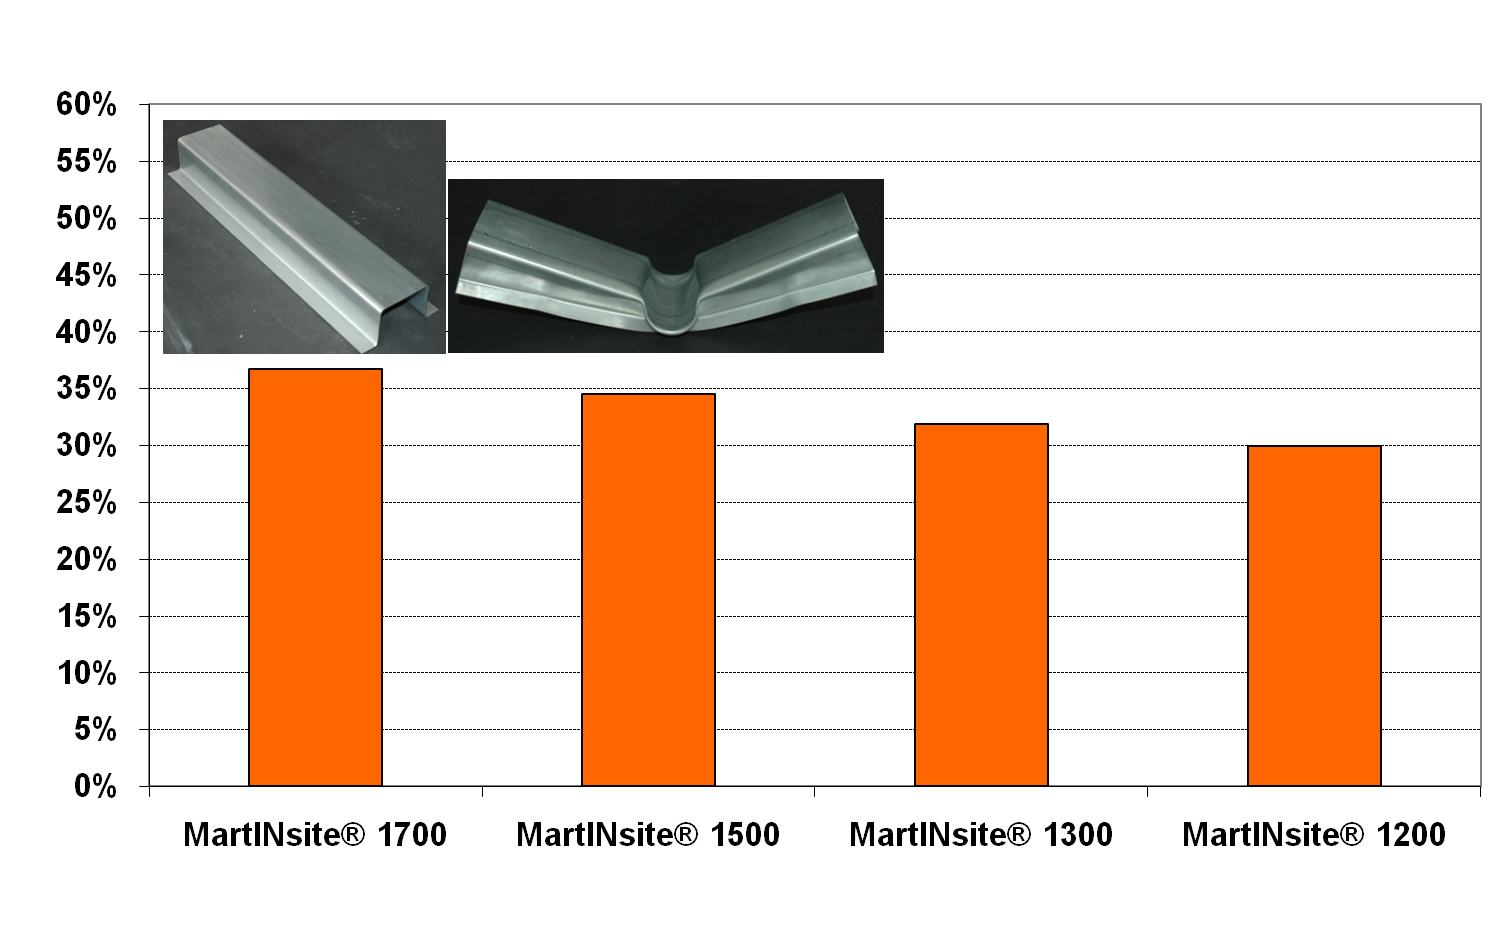 Leichtbaupotenzial im Vergleich mit einem HSLA 380 - Stahl (Referenzmaterial)